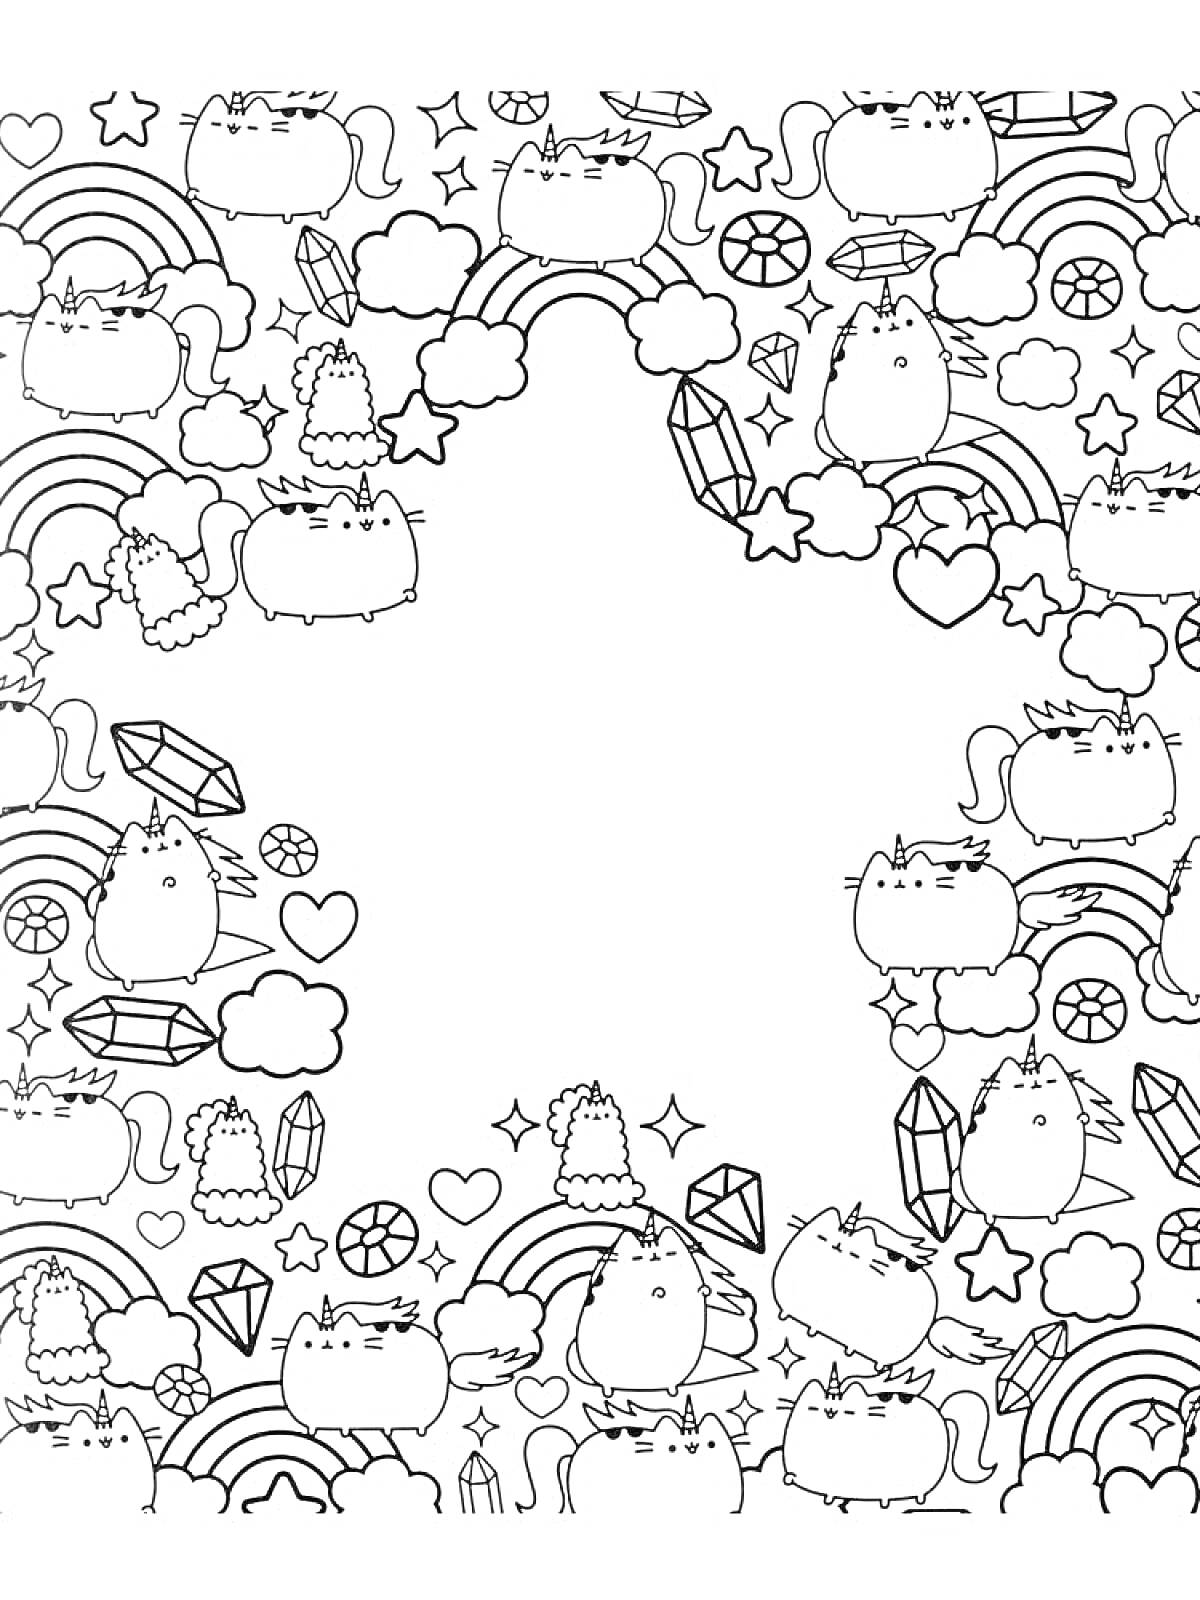 Раскраска Кот Пушин с облаками, радугами, бриллиантами, сердцами, звездами и цветами